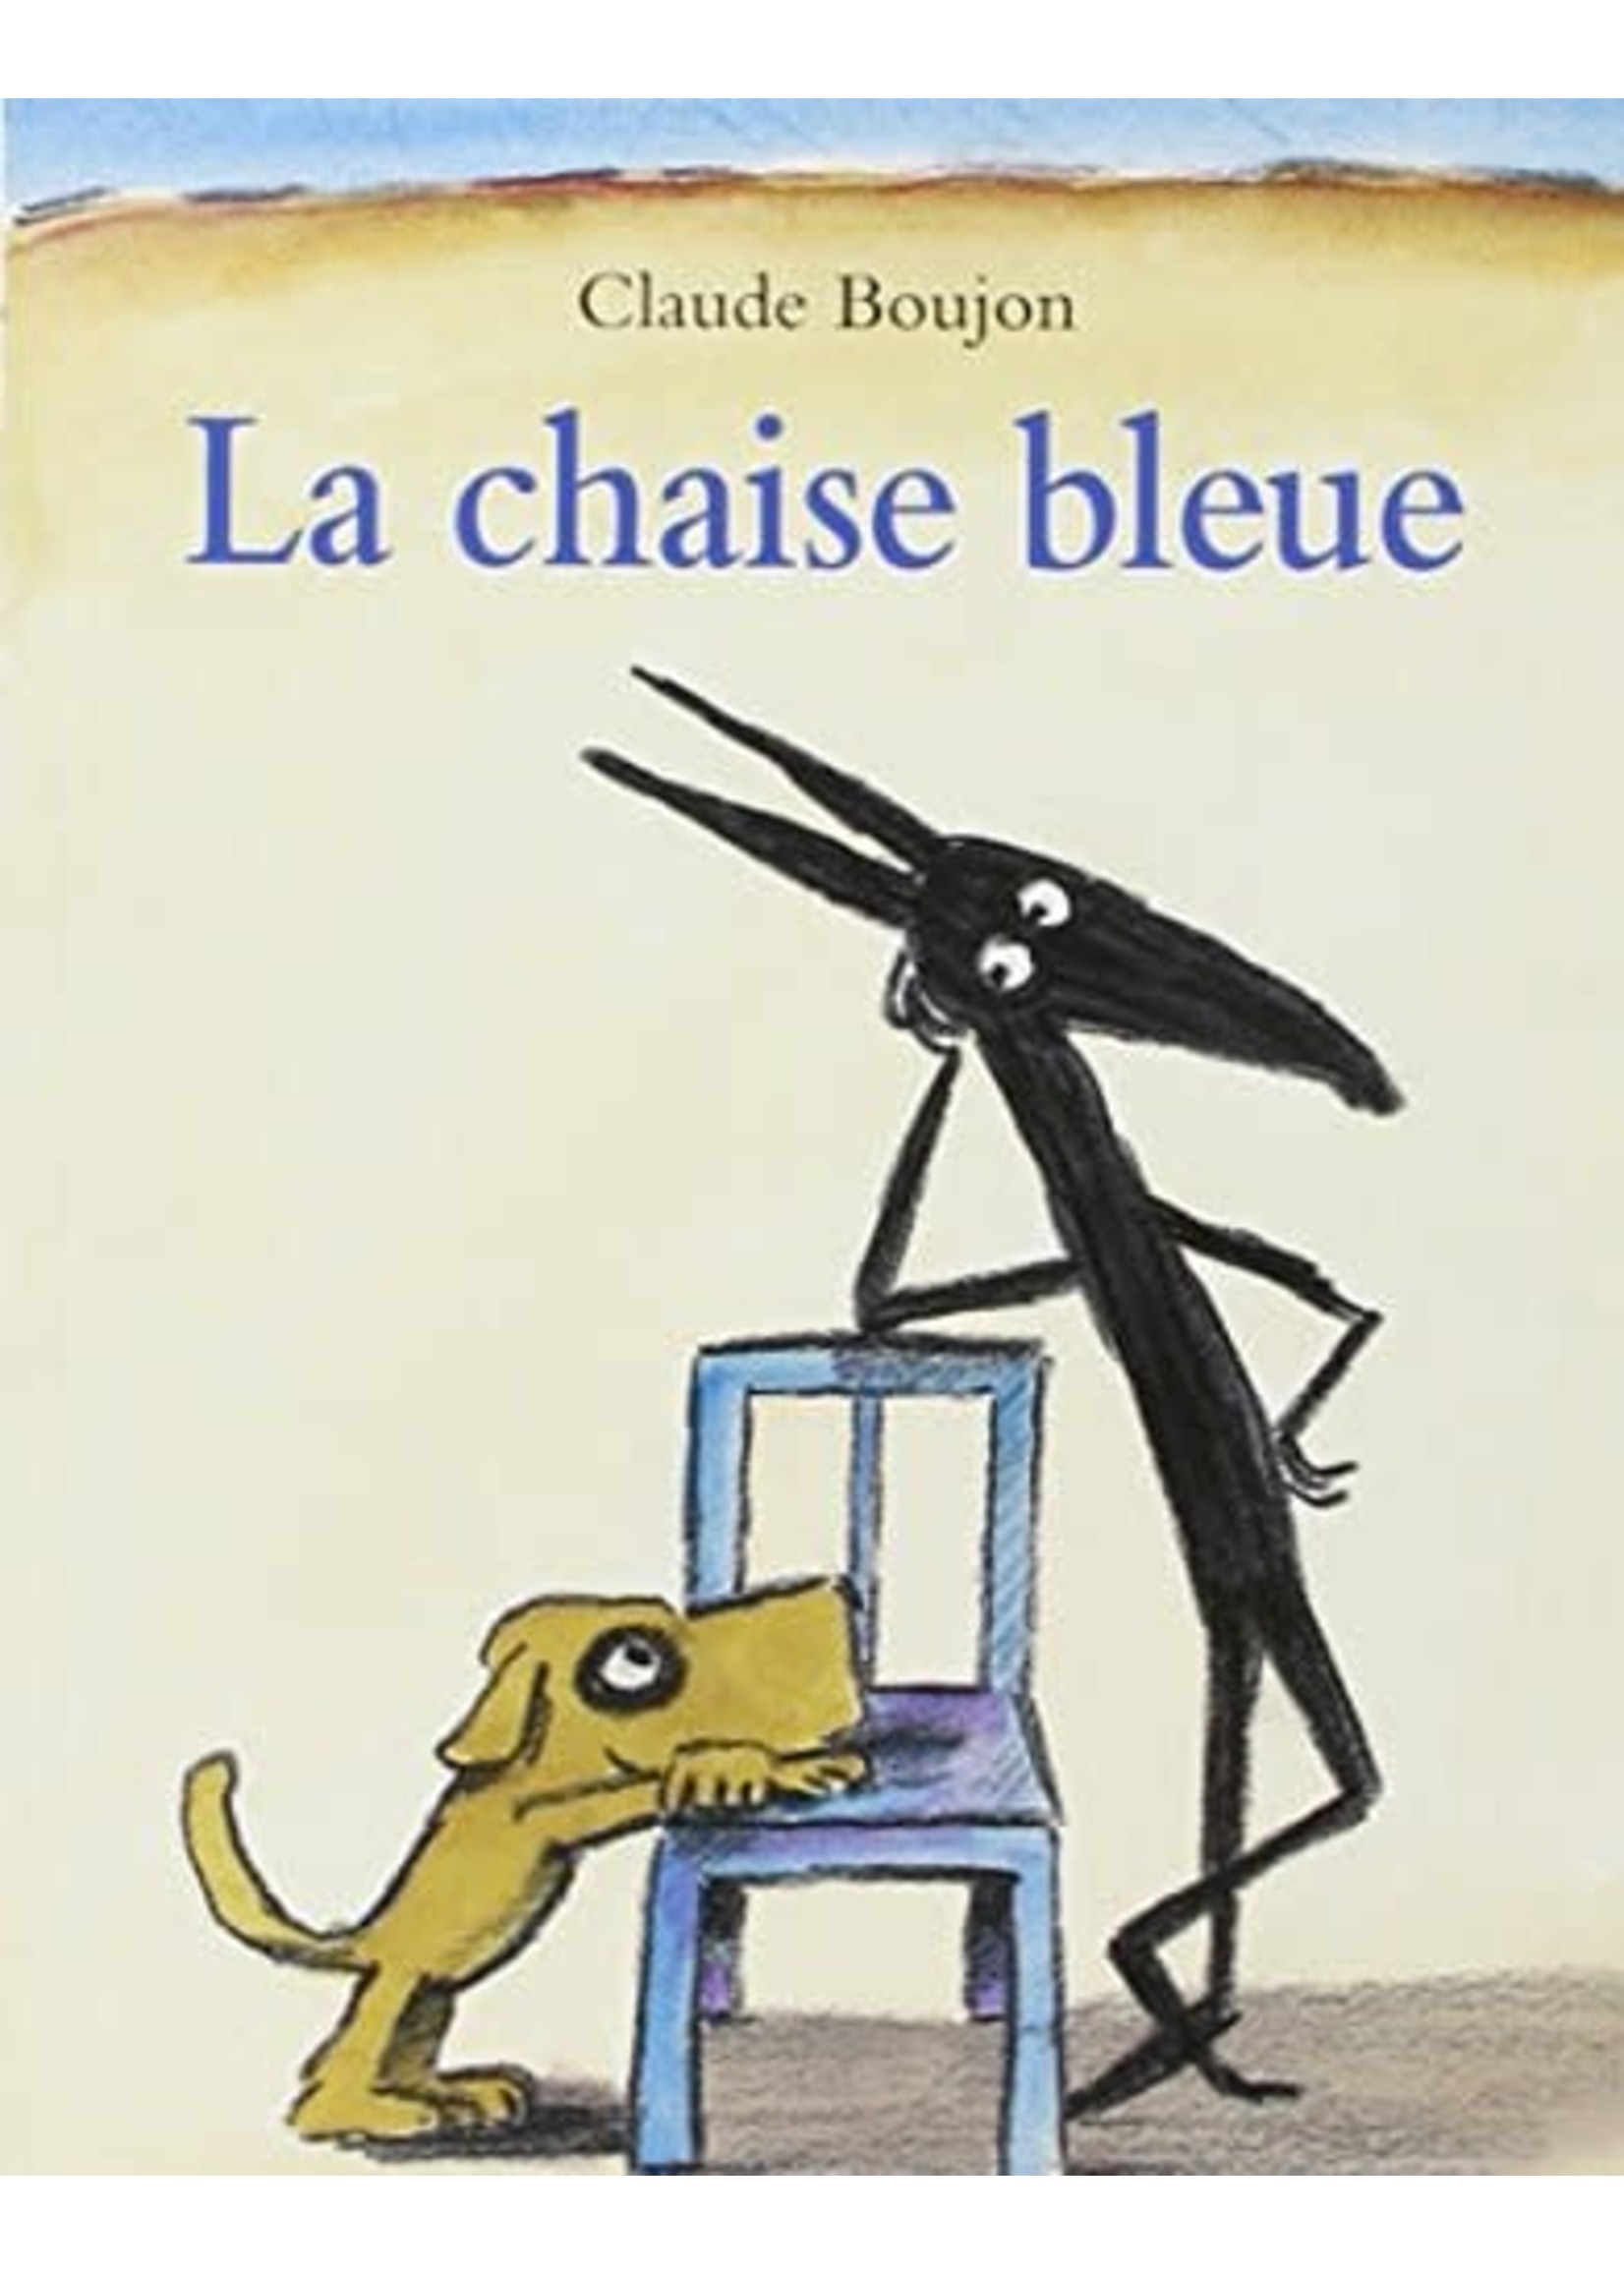 Le chaise bleue by Claude Boujon